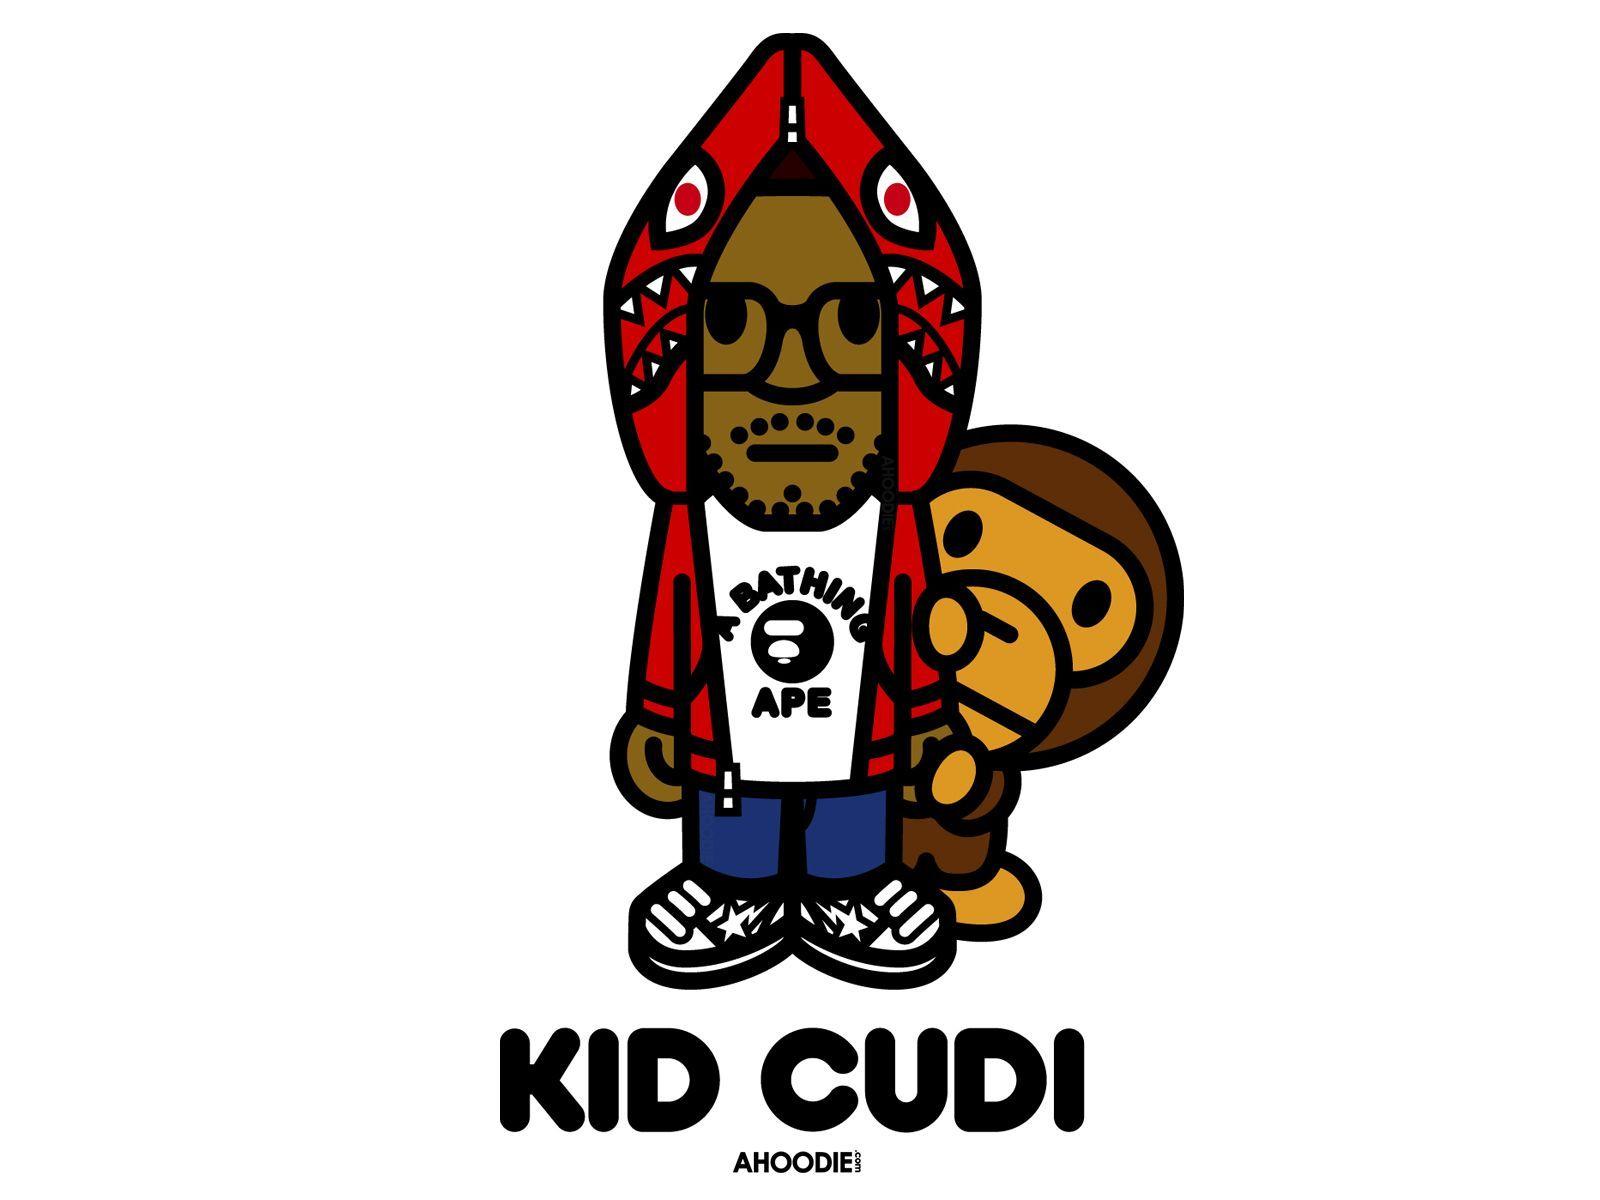 Cudi Logo - Kid Cudi is my favorite artist and 